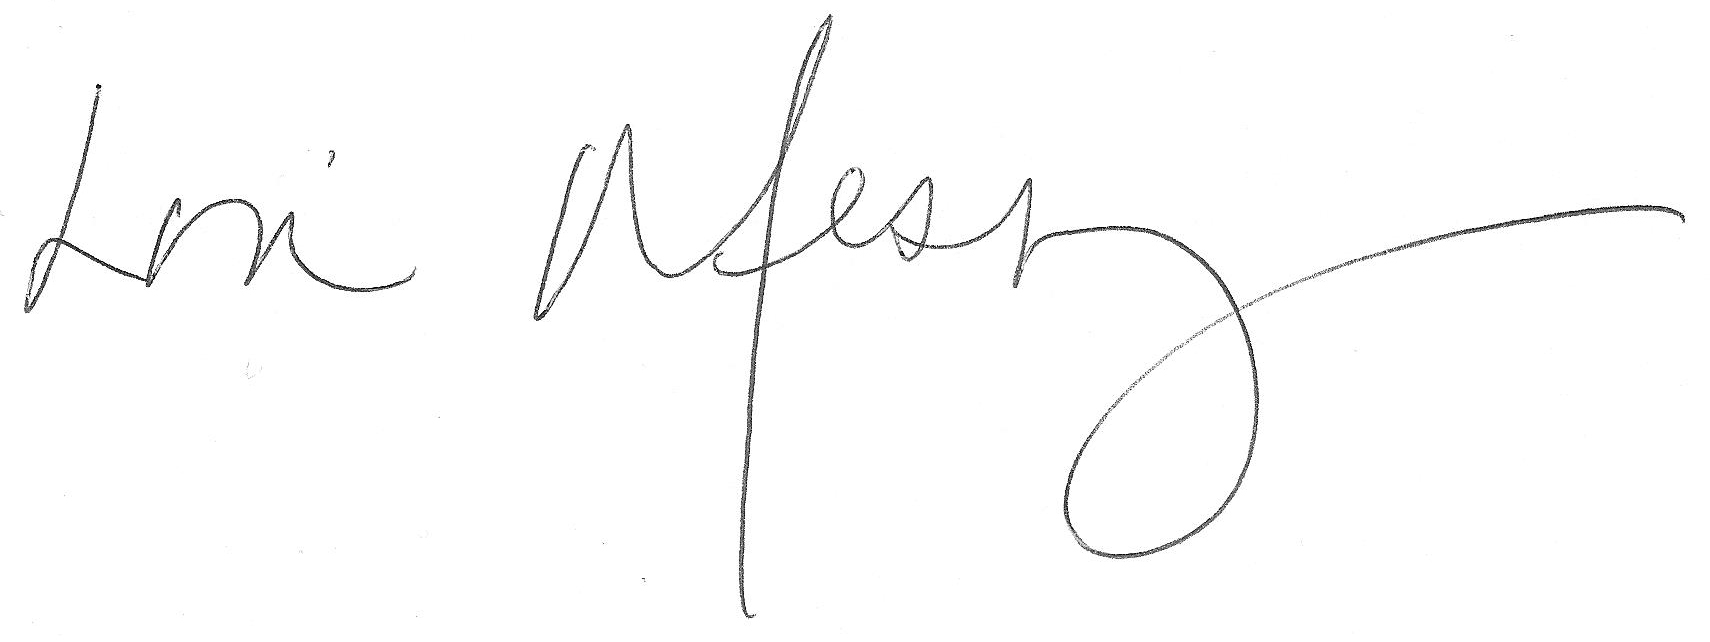 Dr. Messinger's signature